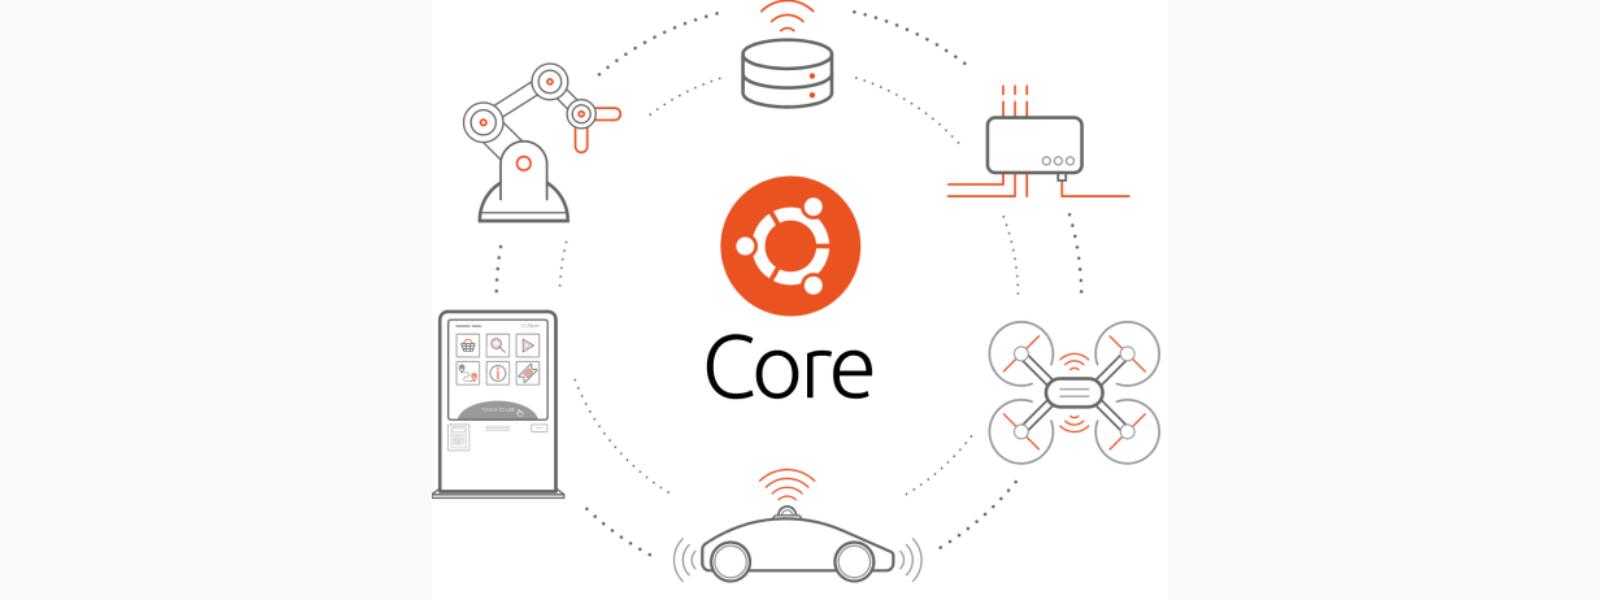 Ubuntu Core 20, nueva versión orientada a IoT y sistemas embebidos